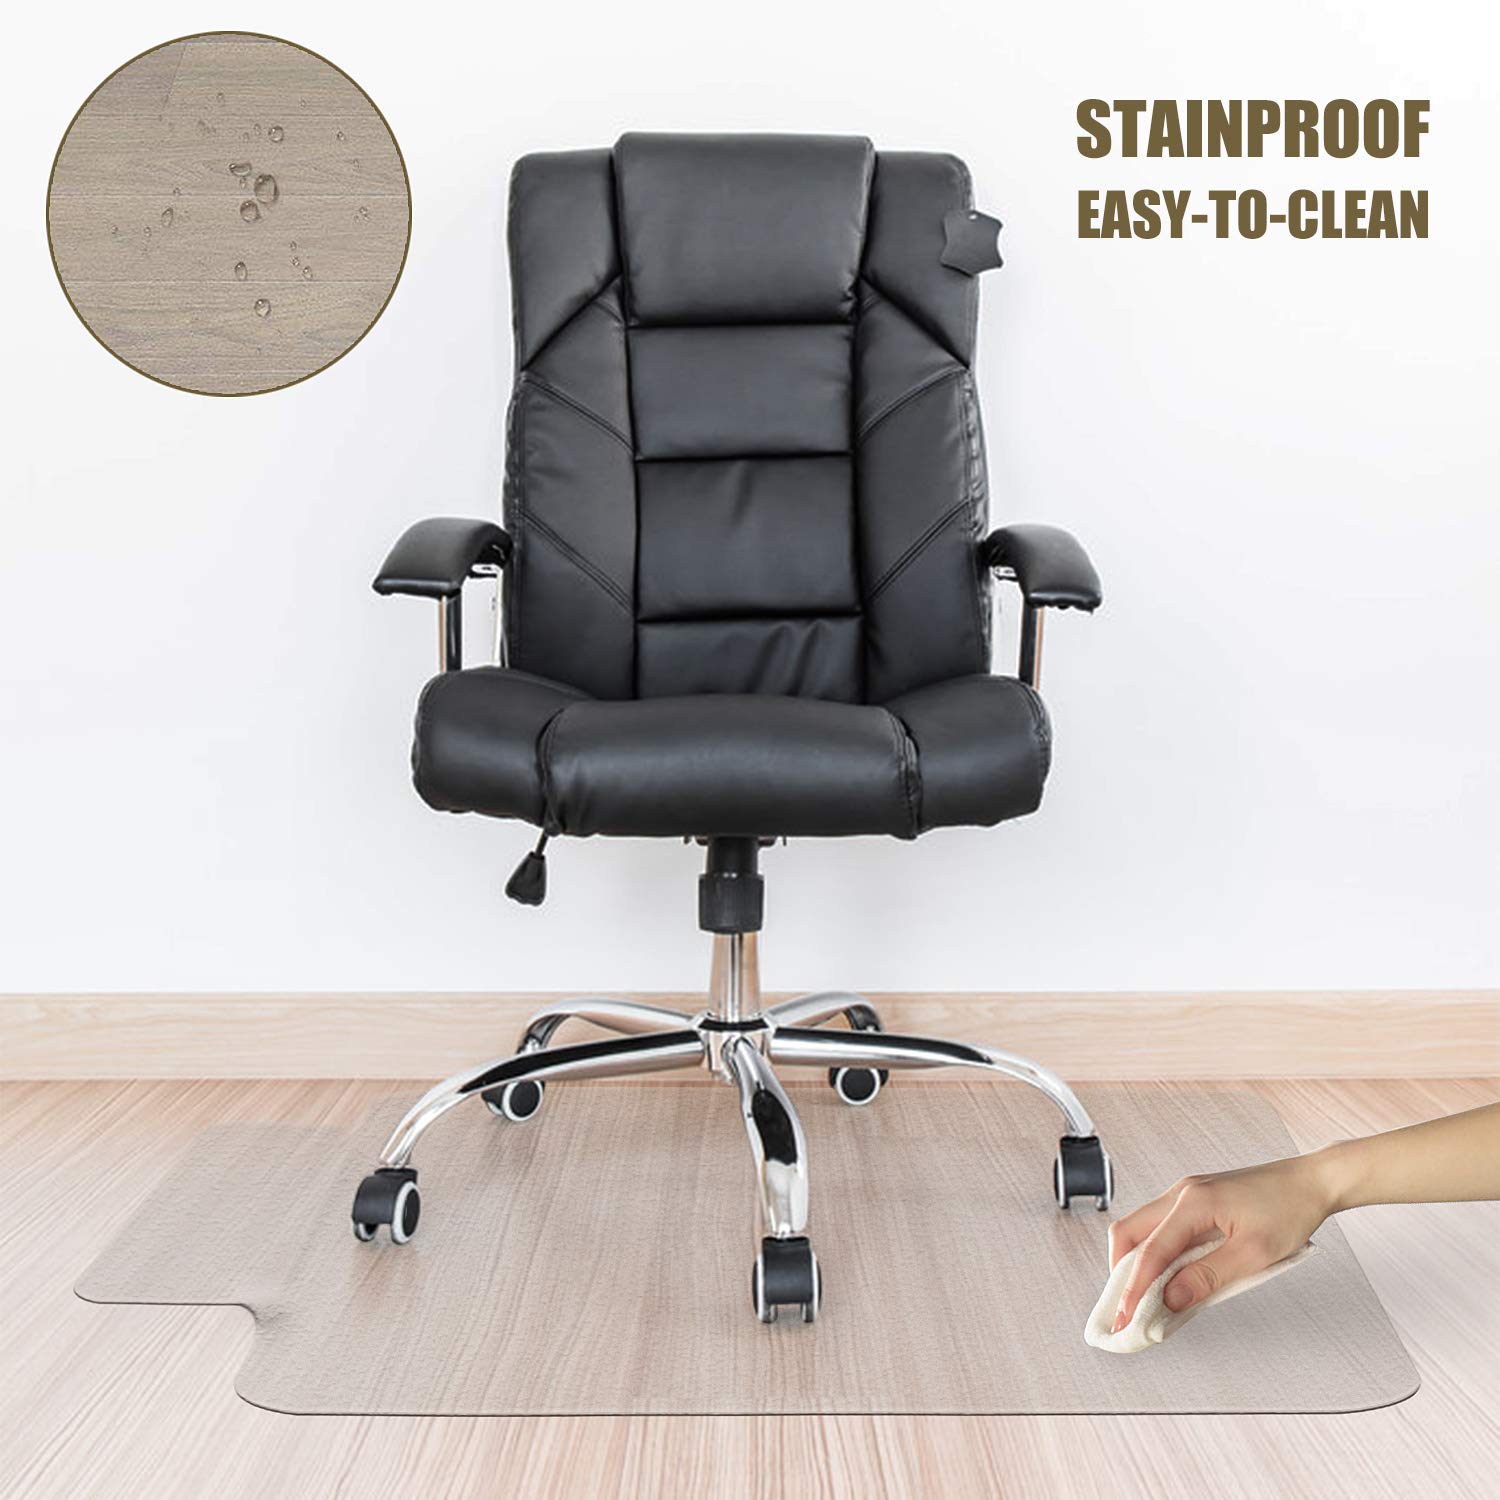 Winado Office Chair Mat For Carpet Floor Mat For Office Chair Rolling Chairs Desk Mat Office Mat For Hardwood Floor Sturdy Durable